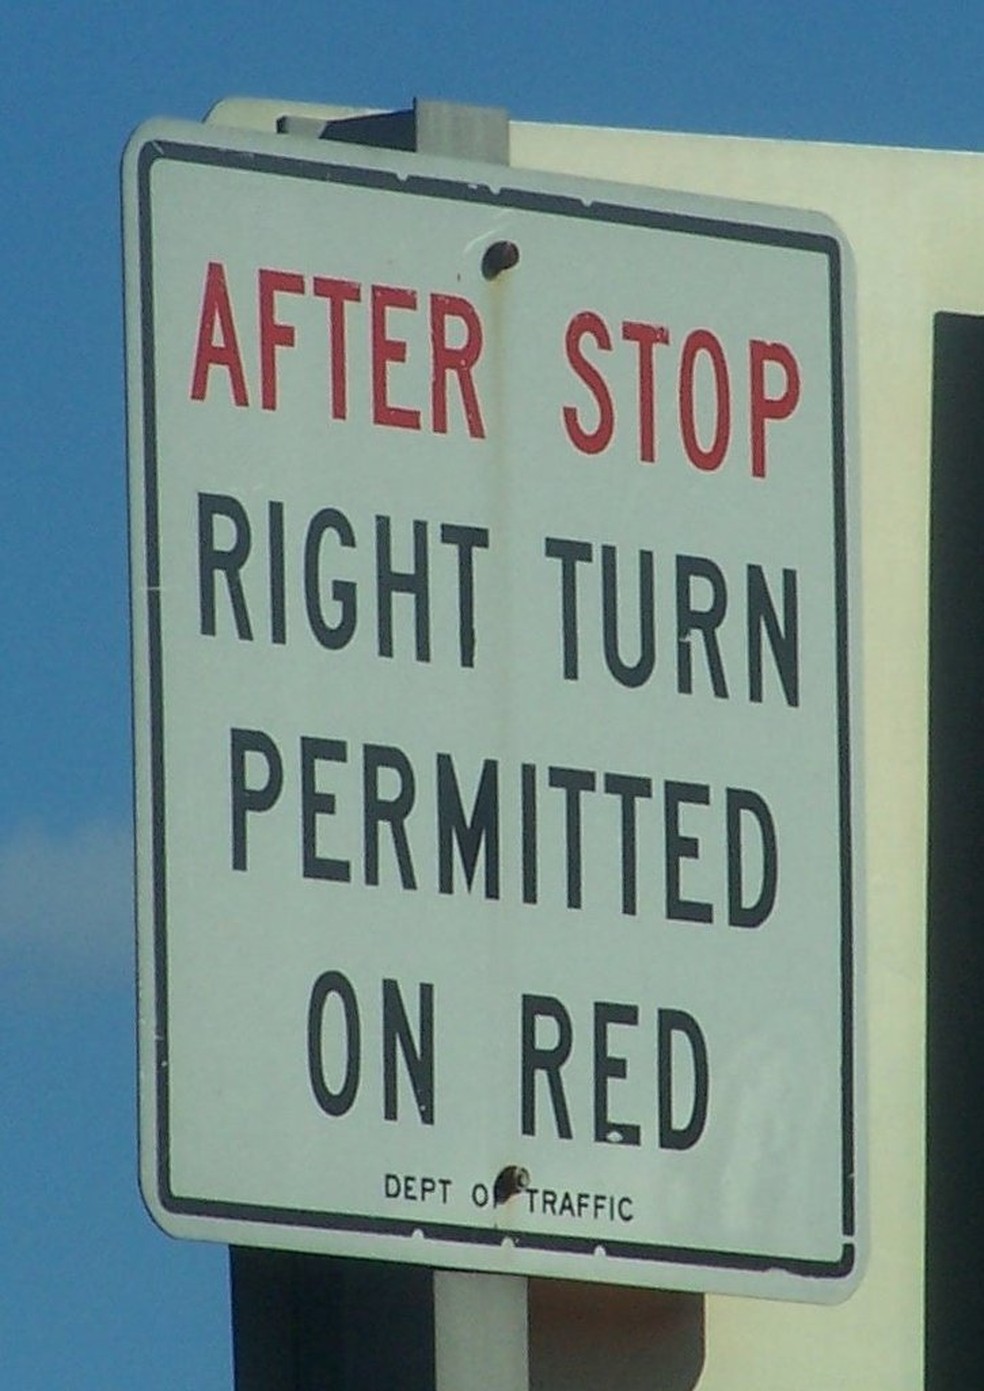 Placa que permite a conversão livre à direita em Nova York. Tradução: após parar, conversão livre à direita no farol vermelho.  — Foto: Wikimedia Commons